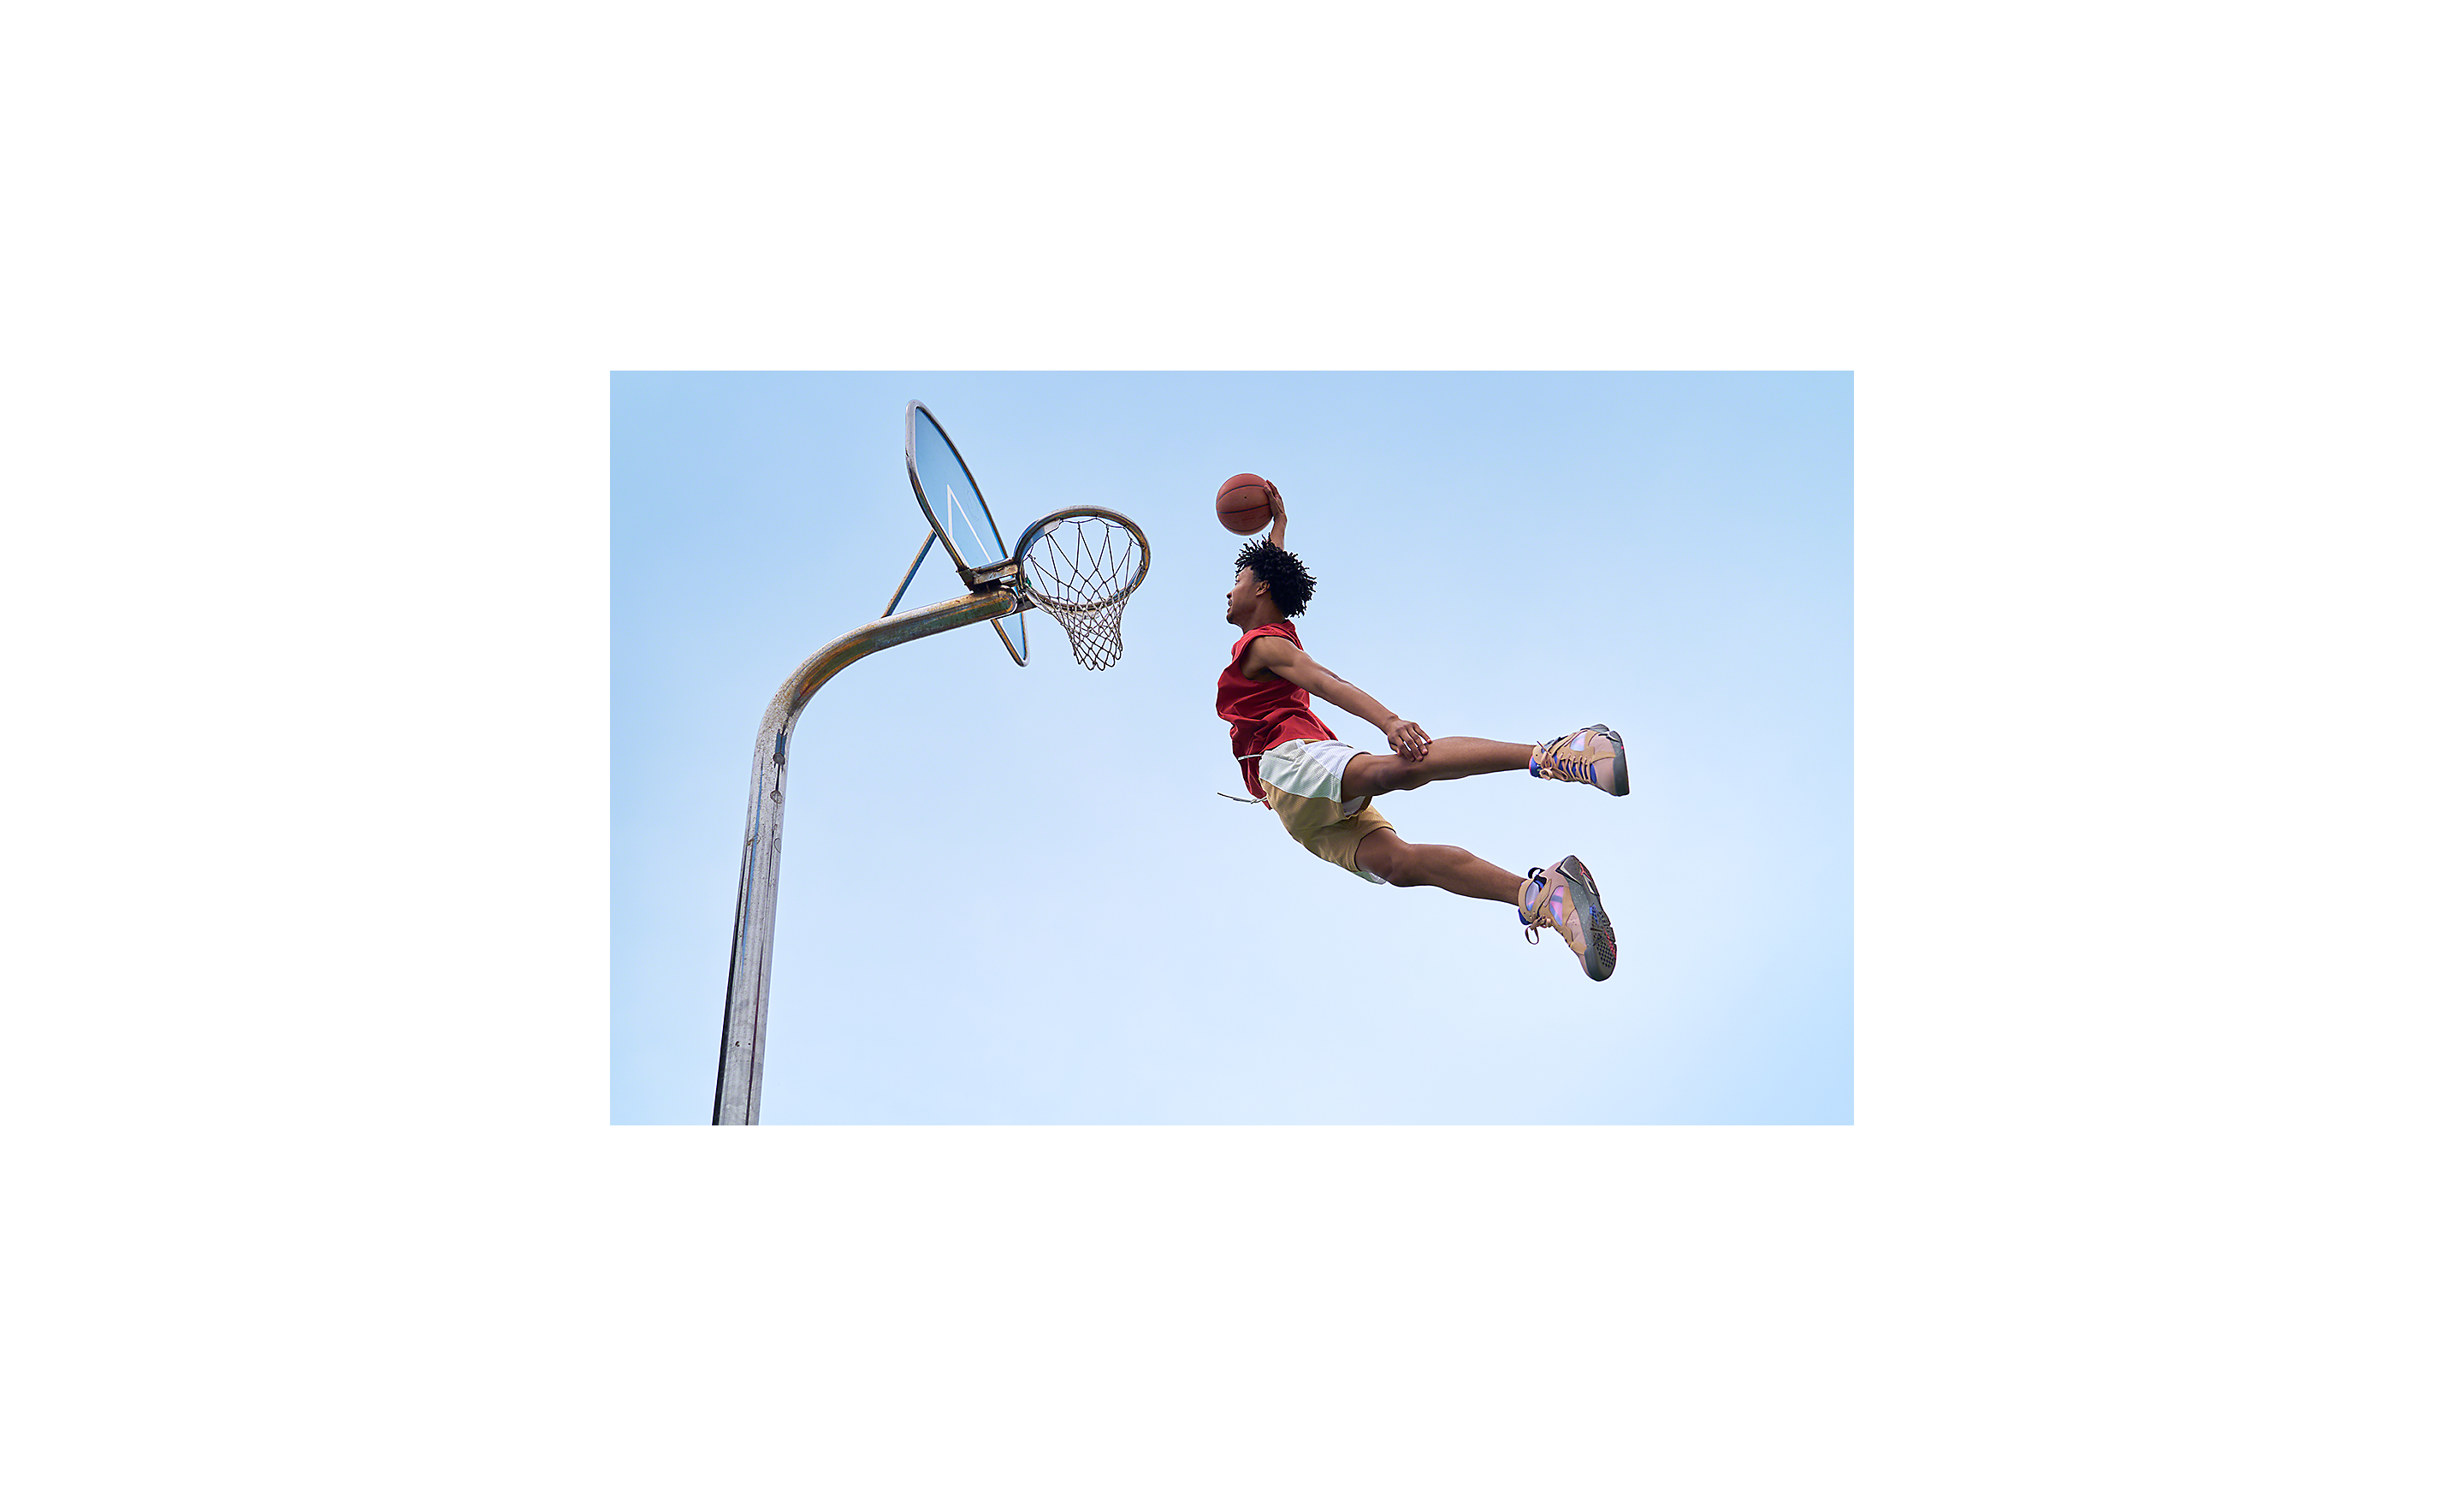 Opname van een basketbalspeler die midden in de lucht hangt en op het punt staat de bal met een dunk in de basket te slaan